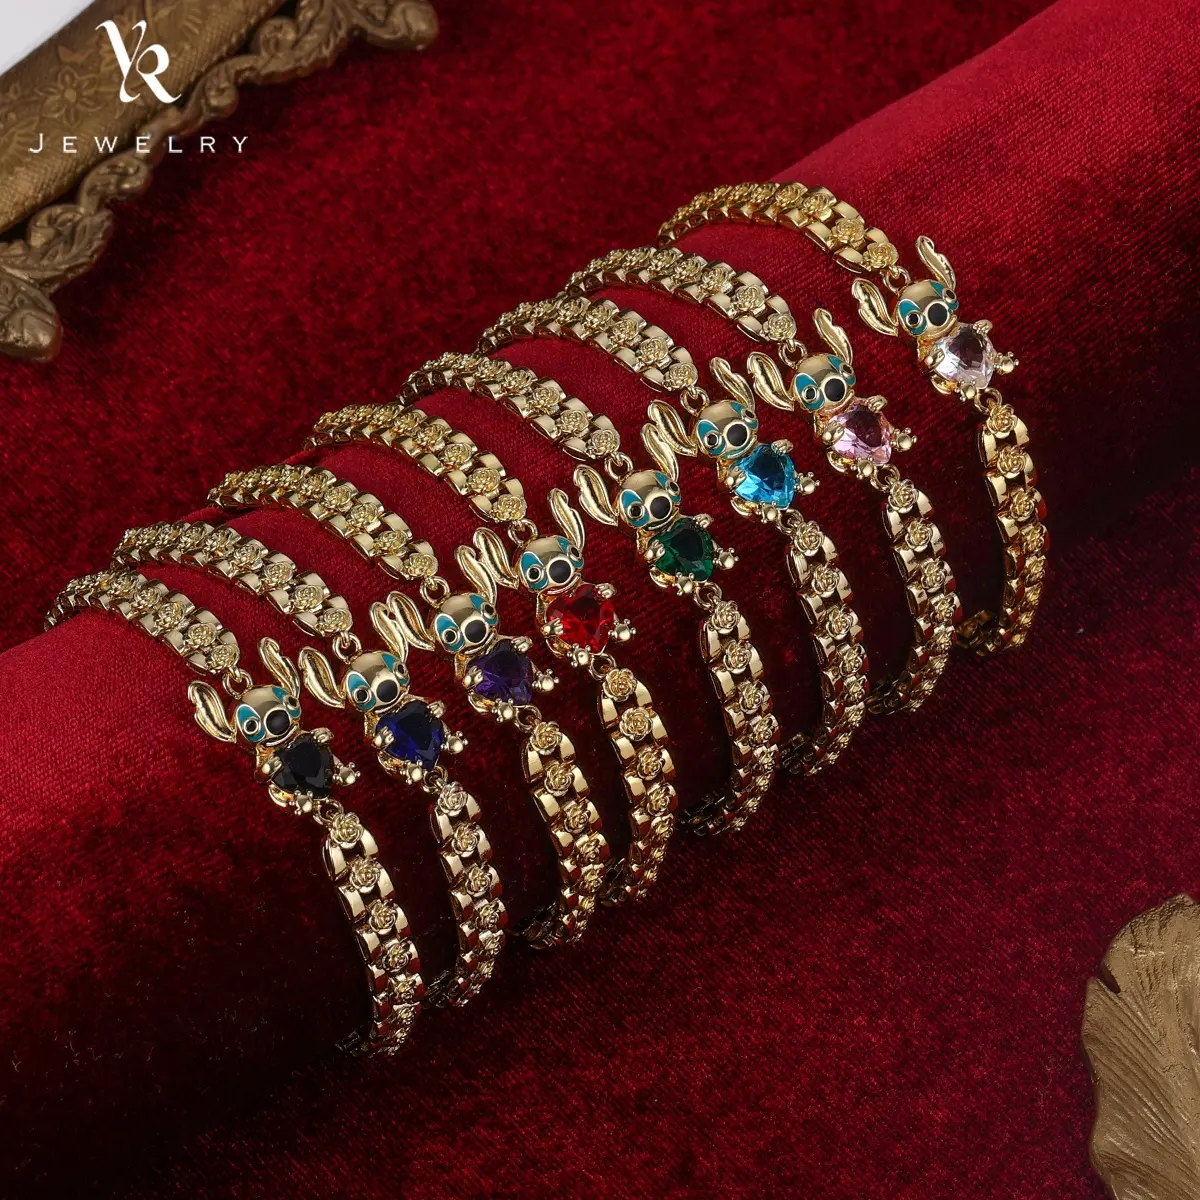 FB0300 Das neue Kristall 18 Karat Gold Armband Viel Glück Mädchen präsentieren Frauen Armbänder